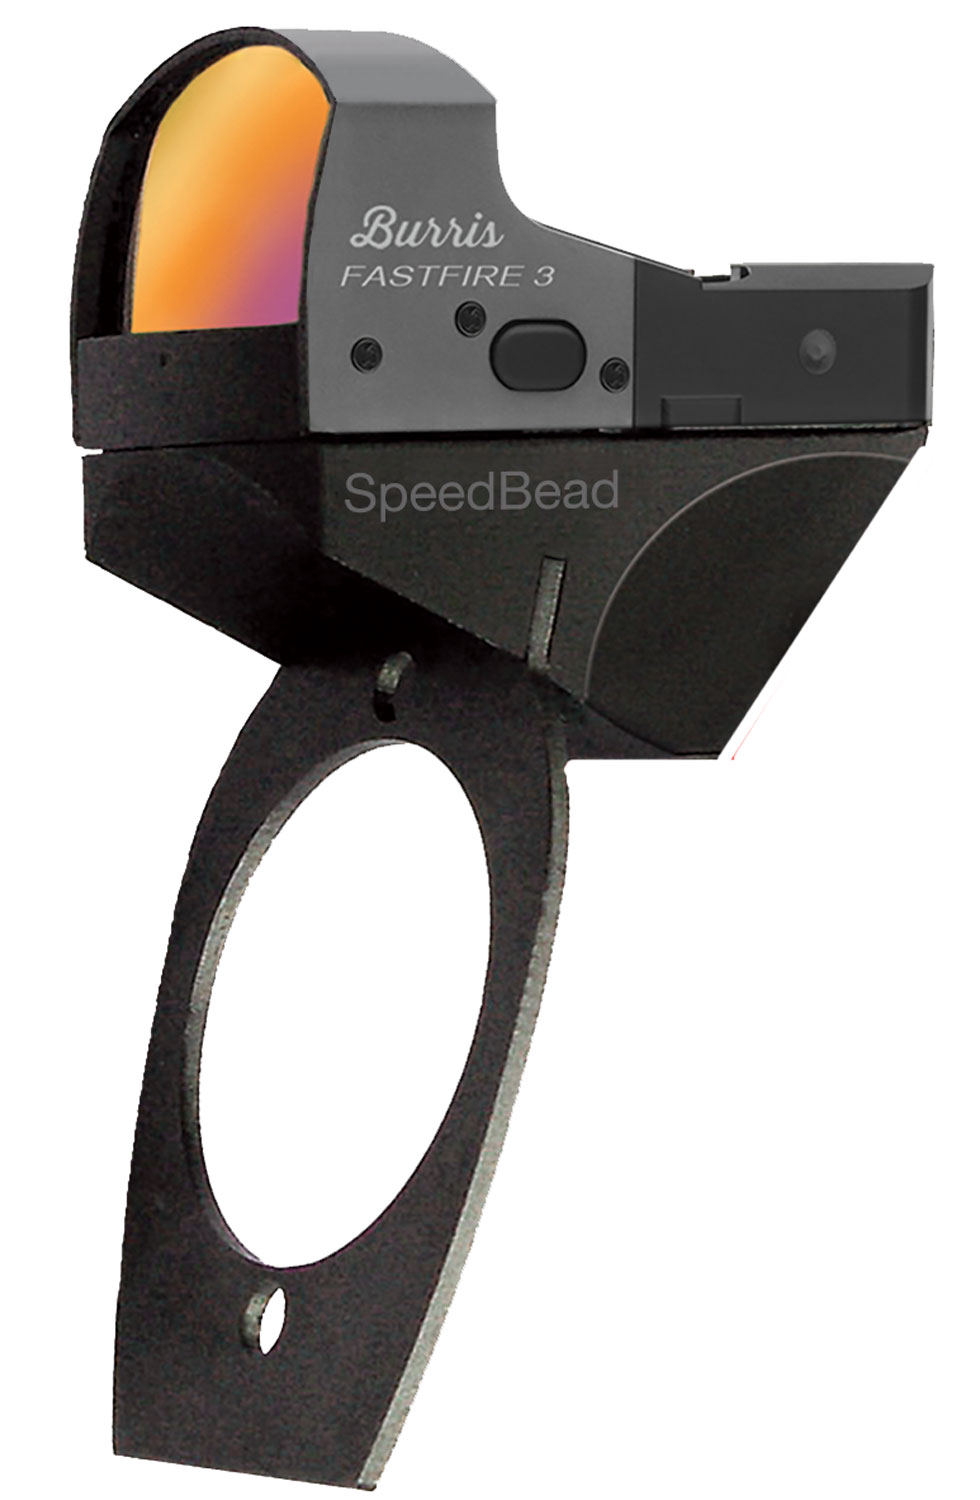 Burris 300244 SpeedBead  Matte Black 1x 21x15mm 8 MOA FastFire Red Dot Reticle Beretta Xtrema/2,391, Urika/2